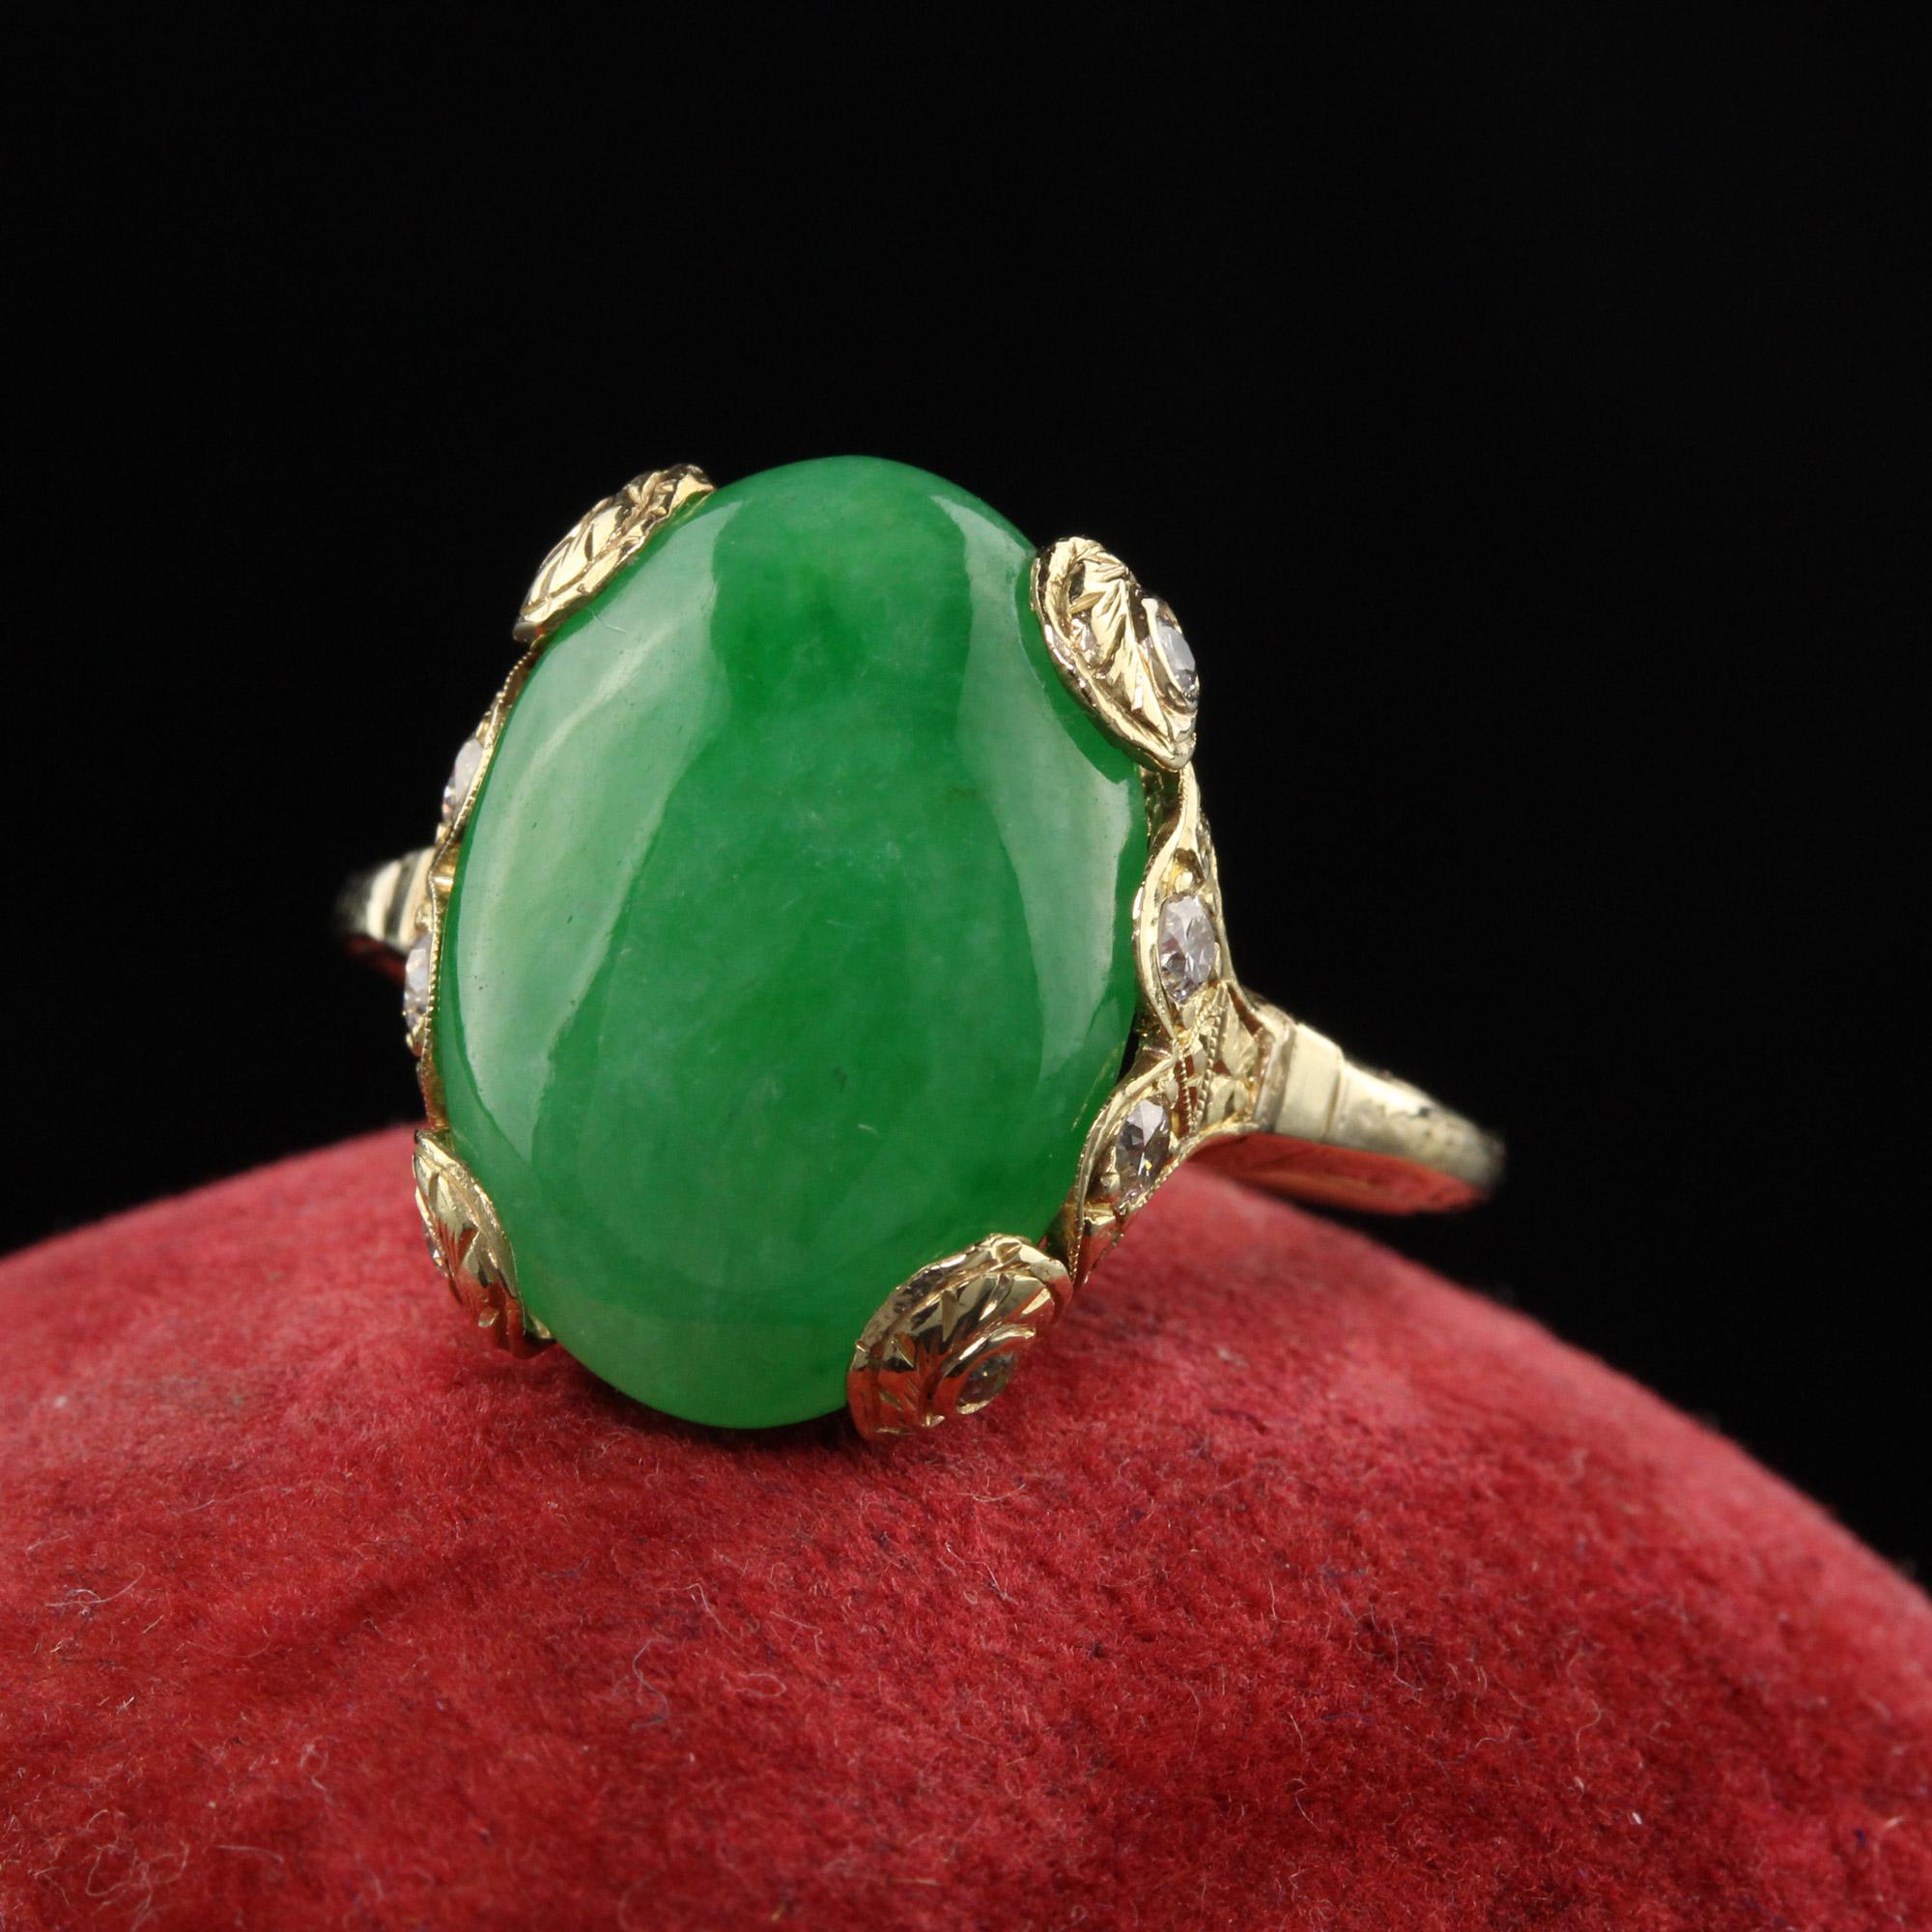 Schöne antike Art Deco 18K Gelbgold Cabochon Jade und alten europäischen Diamant-Ring. Dieser unglaubliche Ring hat eine große Jade in der Mitte eines eingravierten Rings mit alten europäischen Diamanten auf der Halterung gesetzt.

Artikel